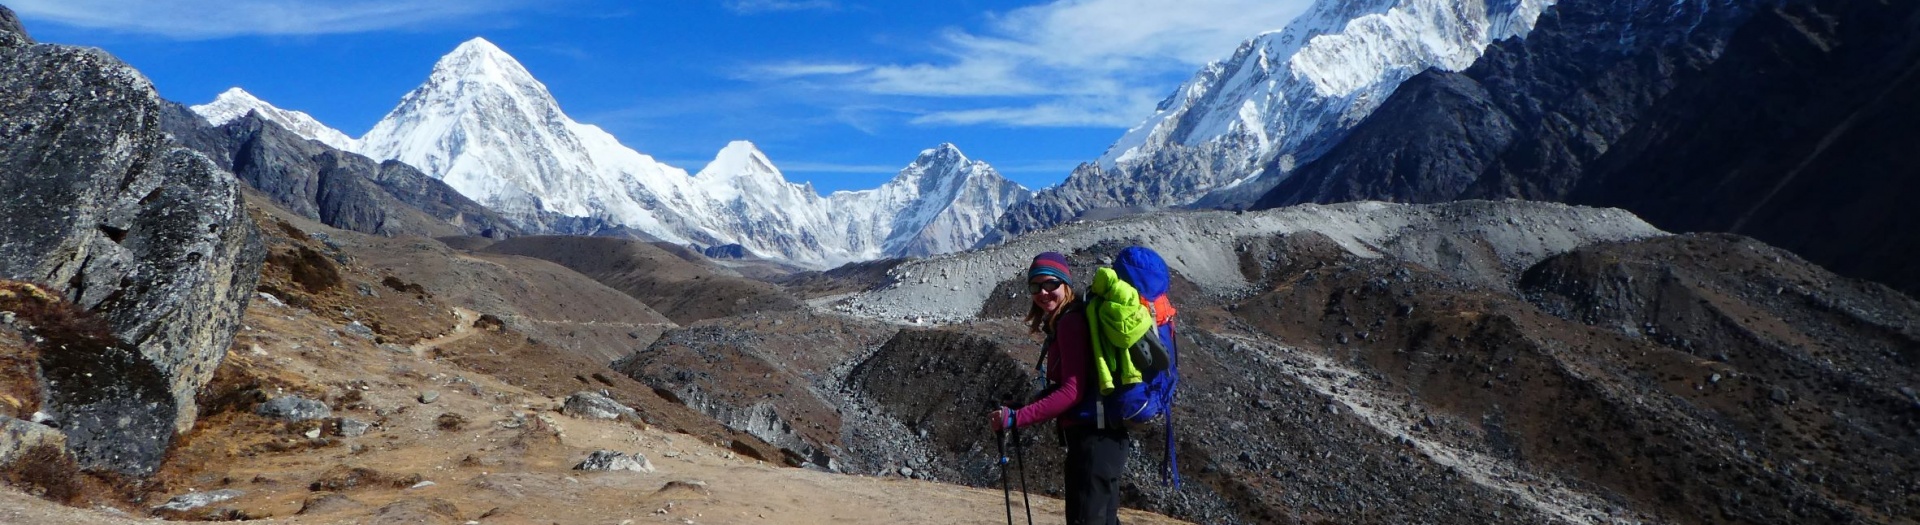 Le Trek du Camp de Base de l'Everest